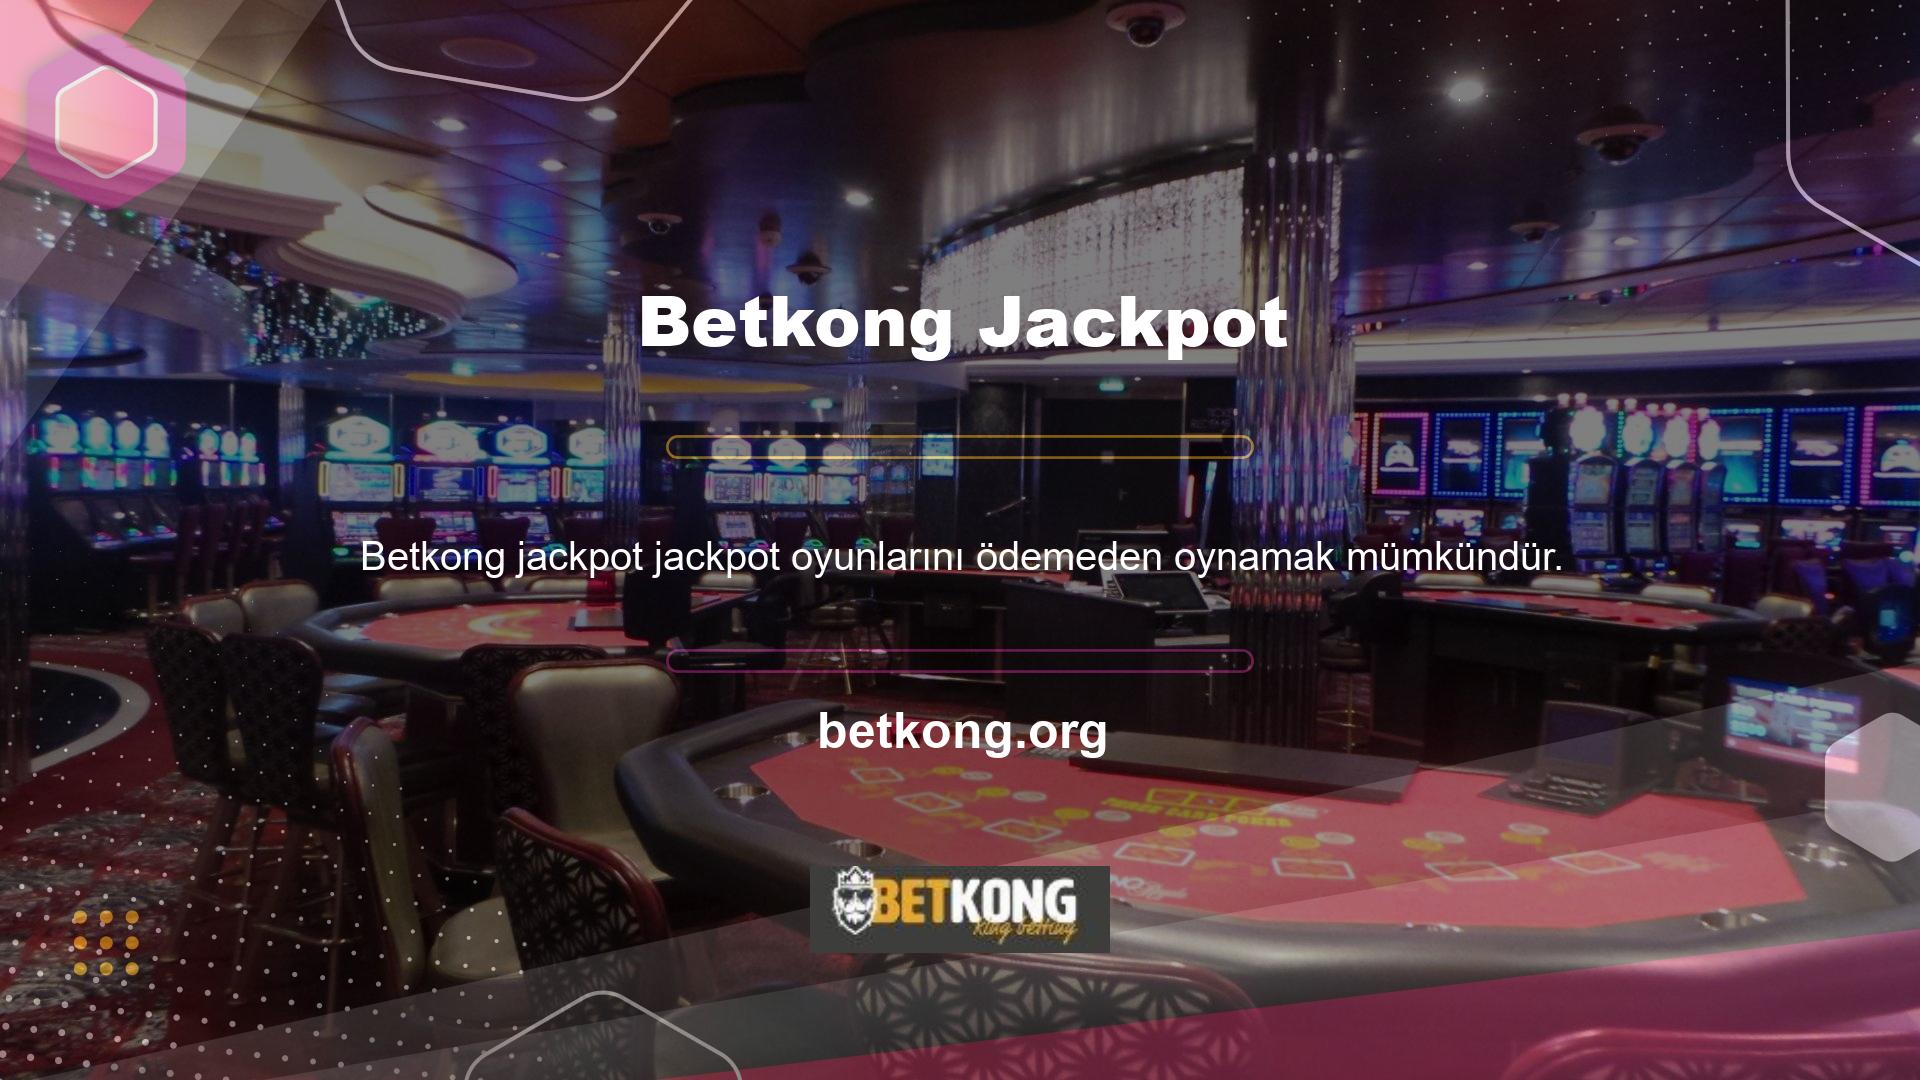 Oyun listesi üst kısımda konumlandırılmış olup, jackpotlar sekmesine tıkladıktan sonra Jackpot oyununa ücretsiz olarak ulaşabilirsiniz